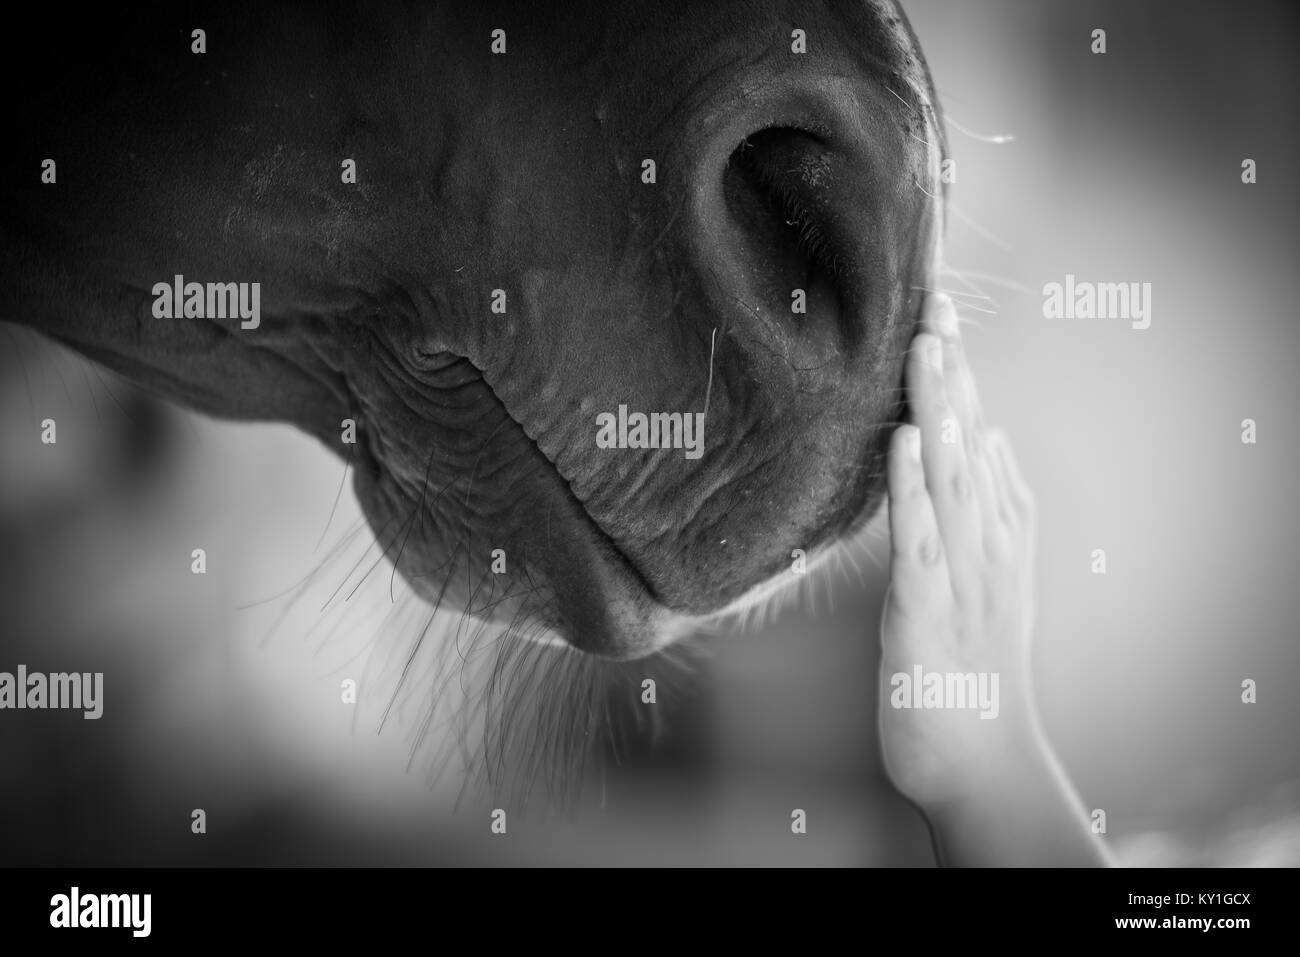 Racehorses Stock Photo